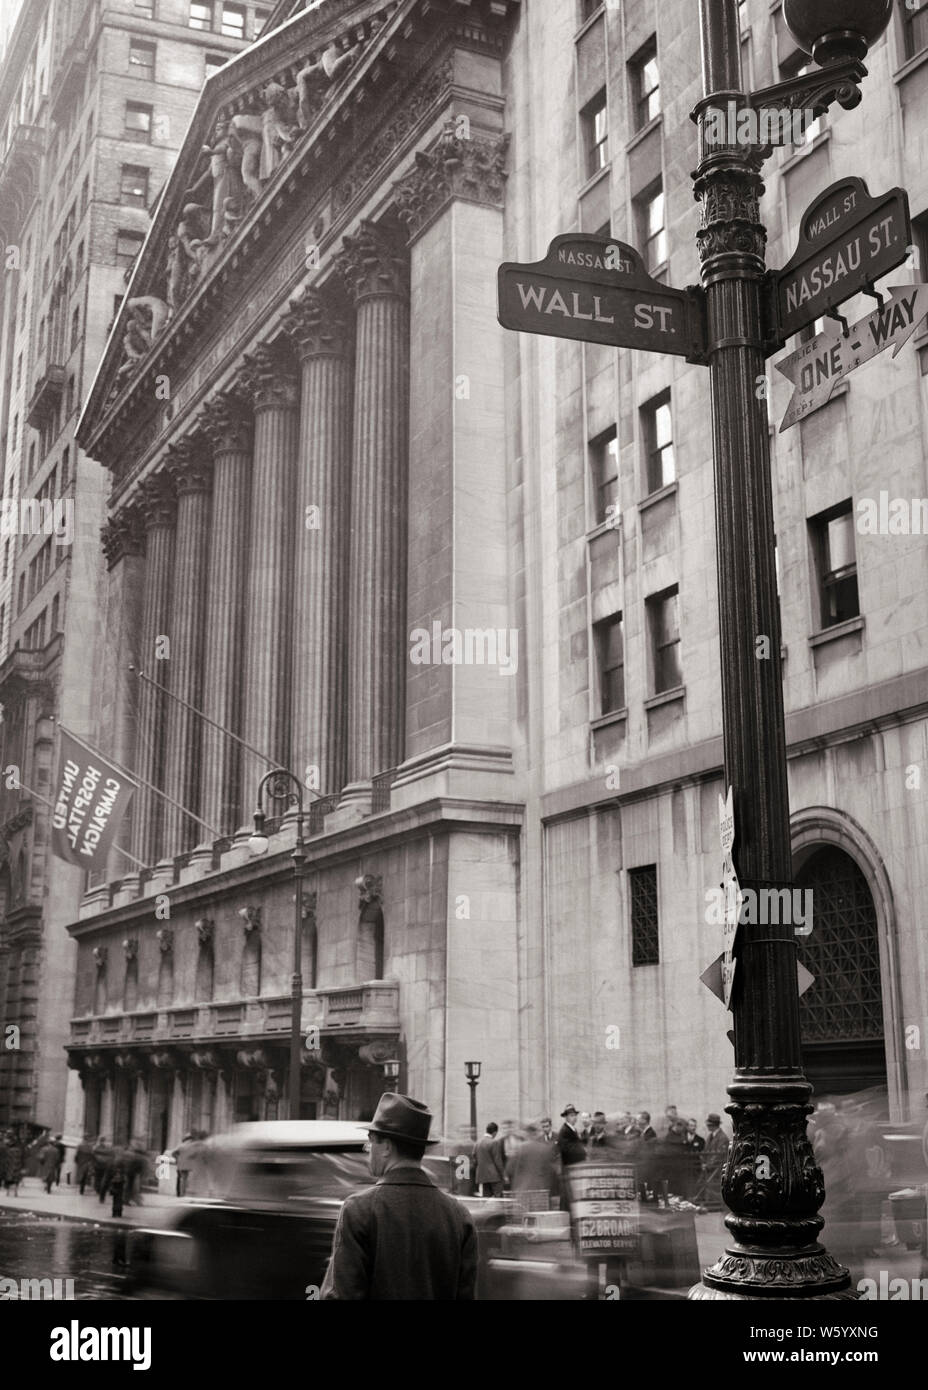 1930s 1937 anonimo imprenditore pedonale avvicina a New York Stock Exchange ANGOLO DI WALL STREET E NASSAU STREET NEW YORK STATI UNITI D'AMERICA - Q74977 CPC001 HARS libertà nord americano pedonale di successo di testa e spalle STRATEGIA DI RESISTENZA ESTERNA E POTENTE DI CONOSCENZA DELLE OPPORTUNITÀ COMPETENTE NYC OCCUPAZIONI CONCEPTUAL NEW YORK città elegante NEW YORK CITY ANONIMO MID-adulto metà uomo adulto WALL STREET 1937 avvicinando in bianco e nero di etnia caucasica VECCHIO STOCK EXCHANGE Foto Stock